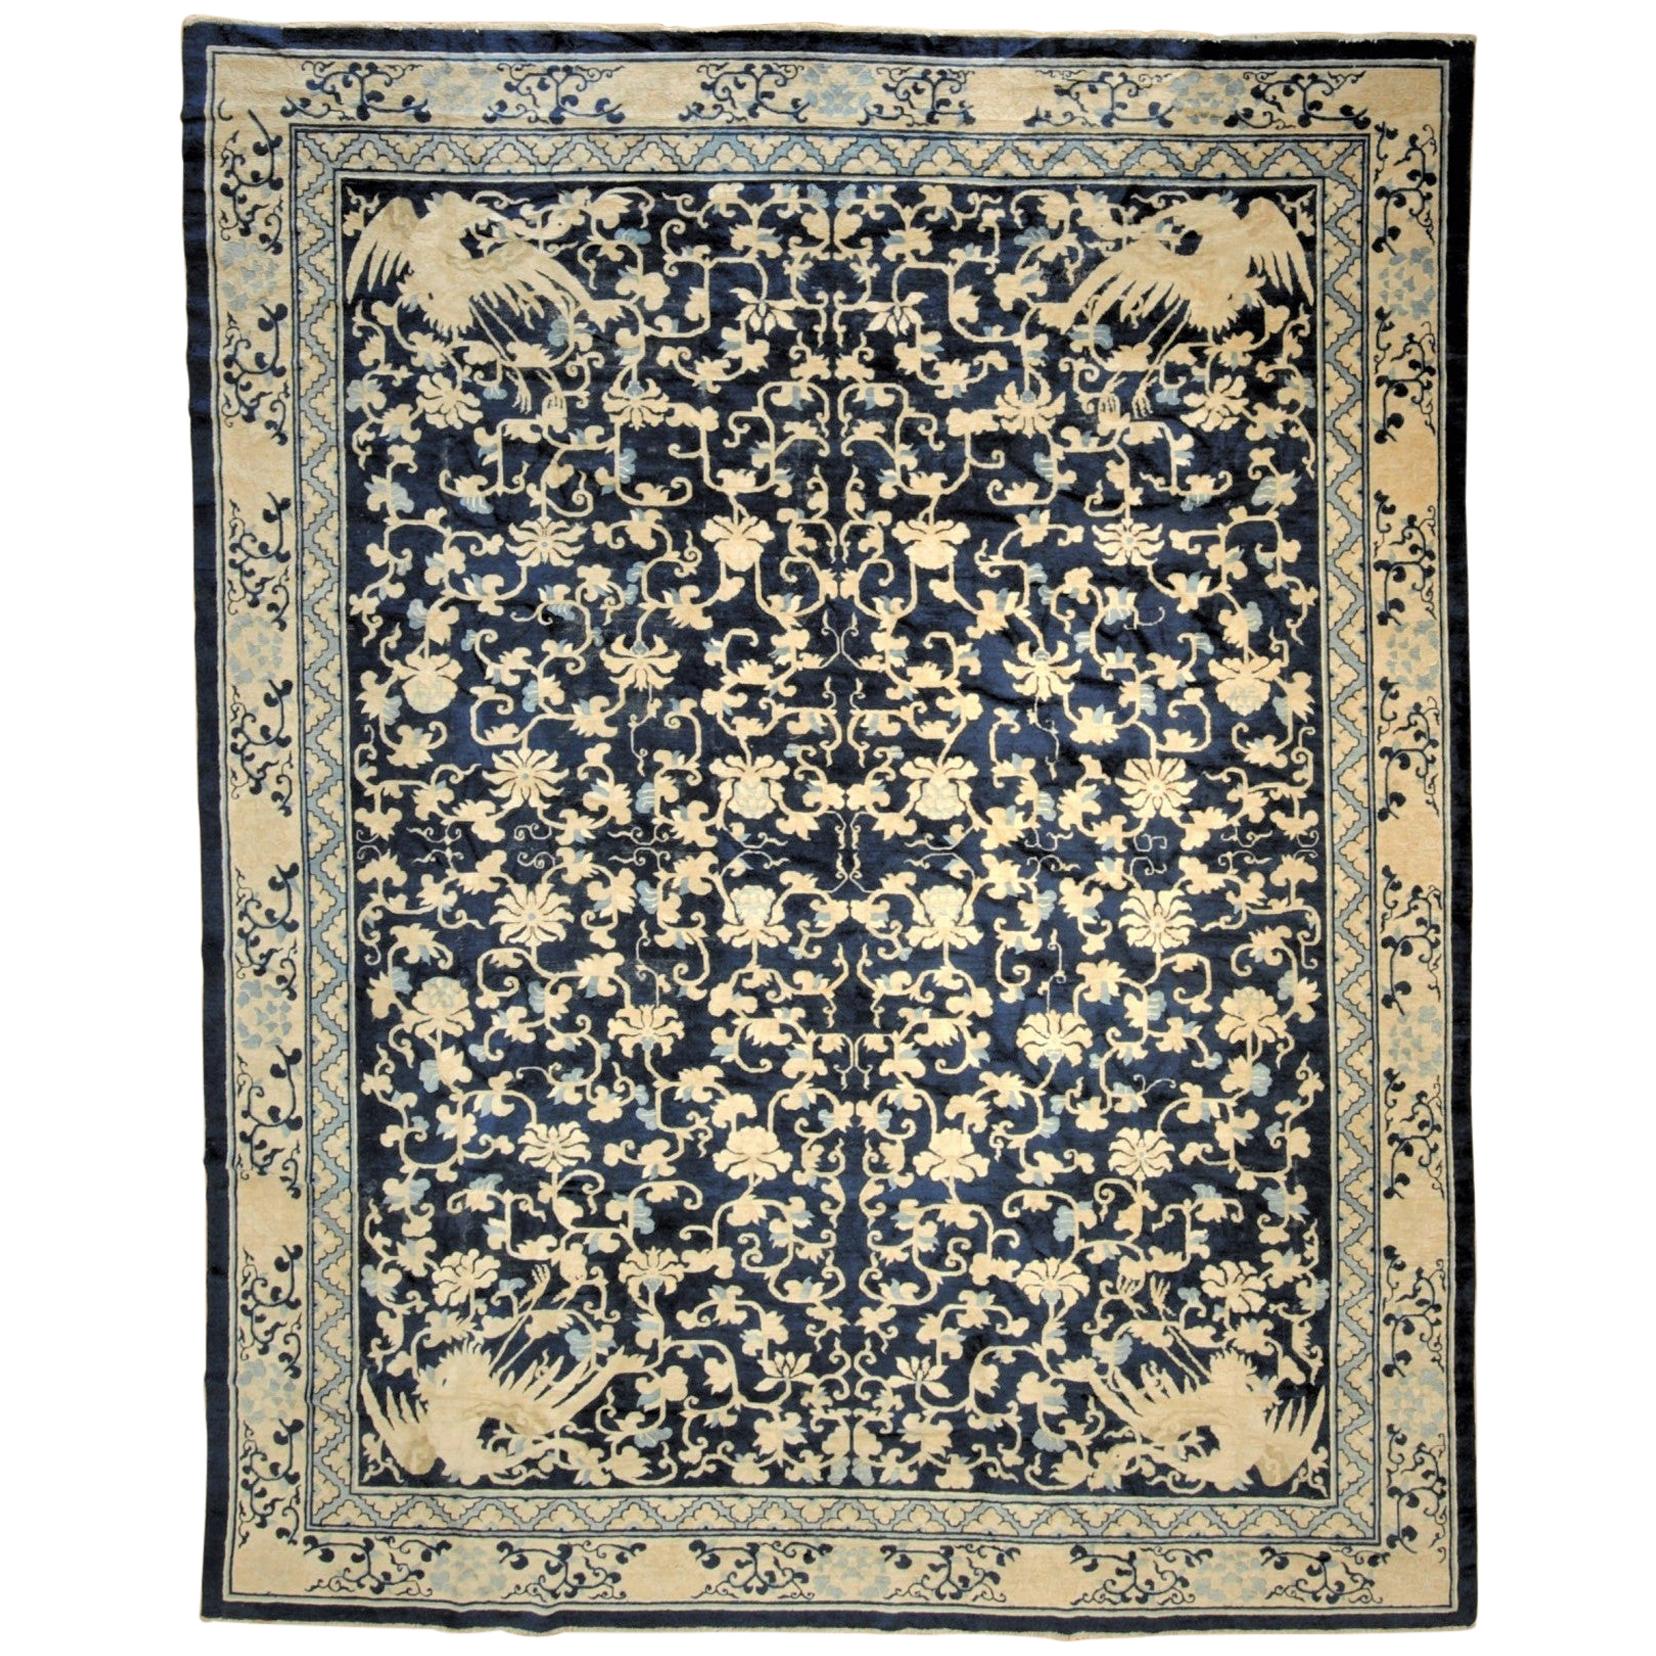 Blauer und weißer chinesischer Phönixfloreal-Teppich aus Peking des 19. Jahrhunderts, um 1870